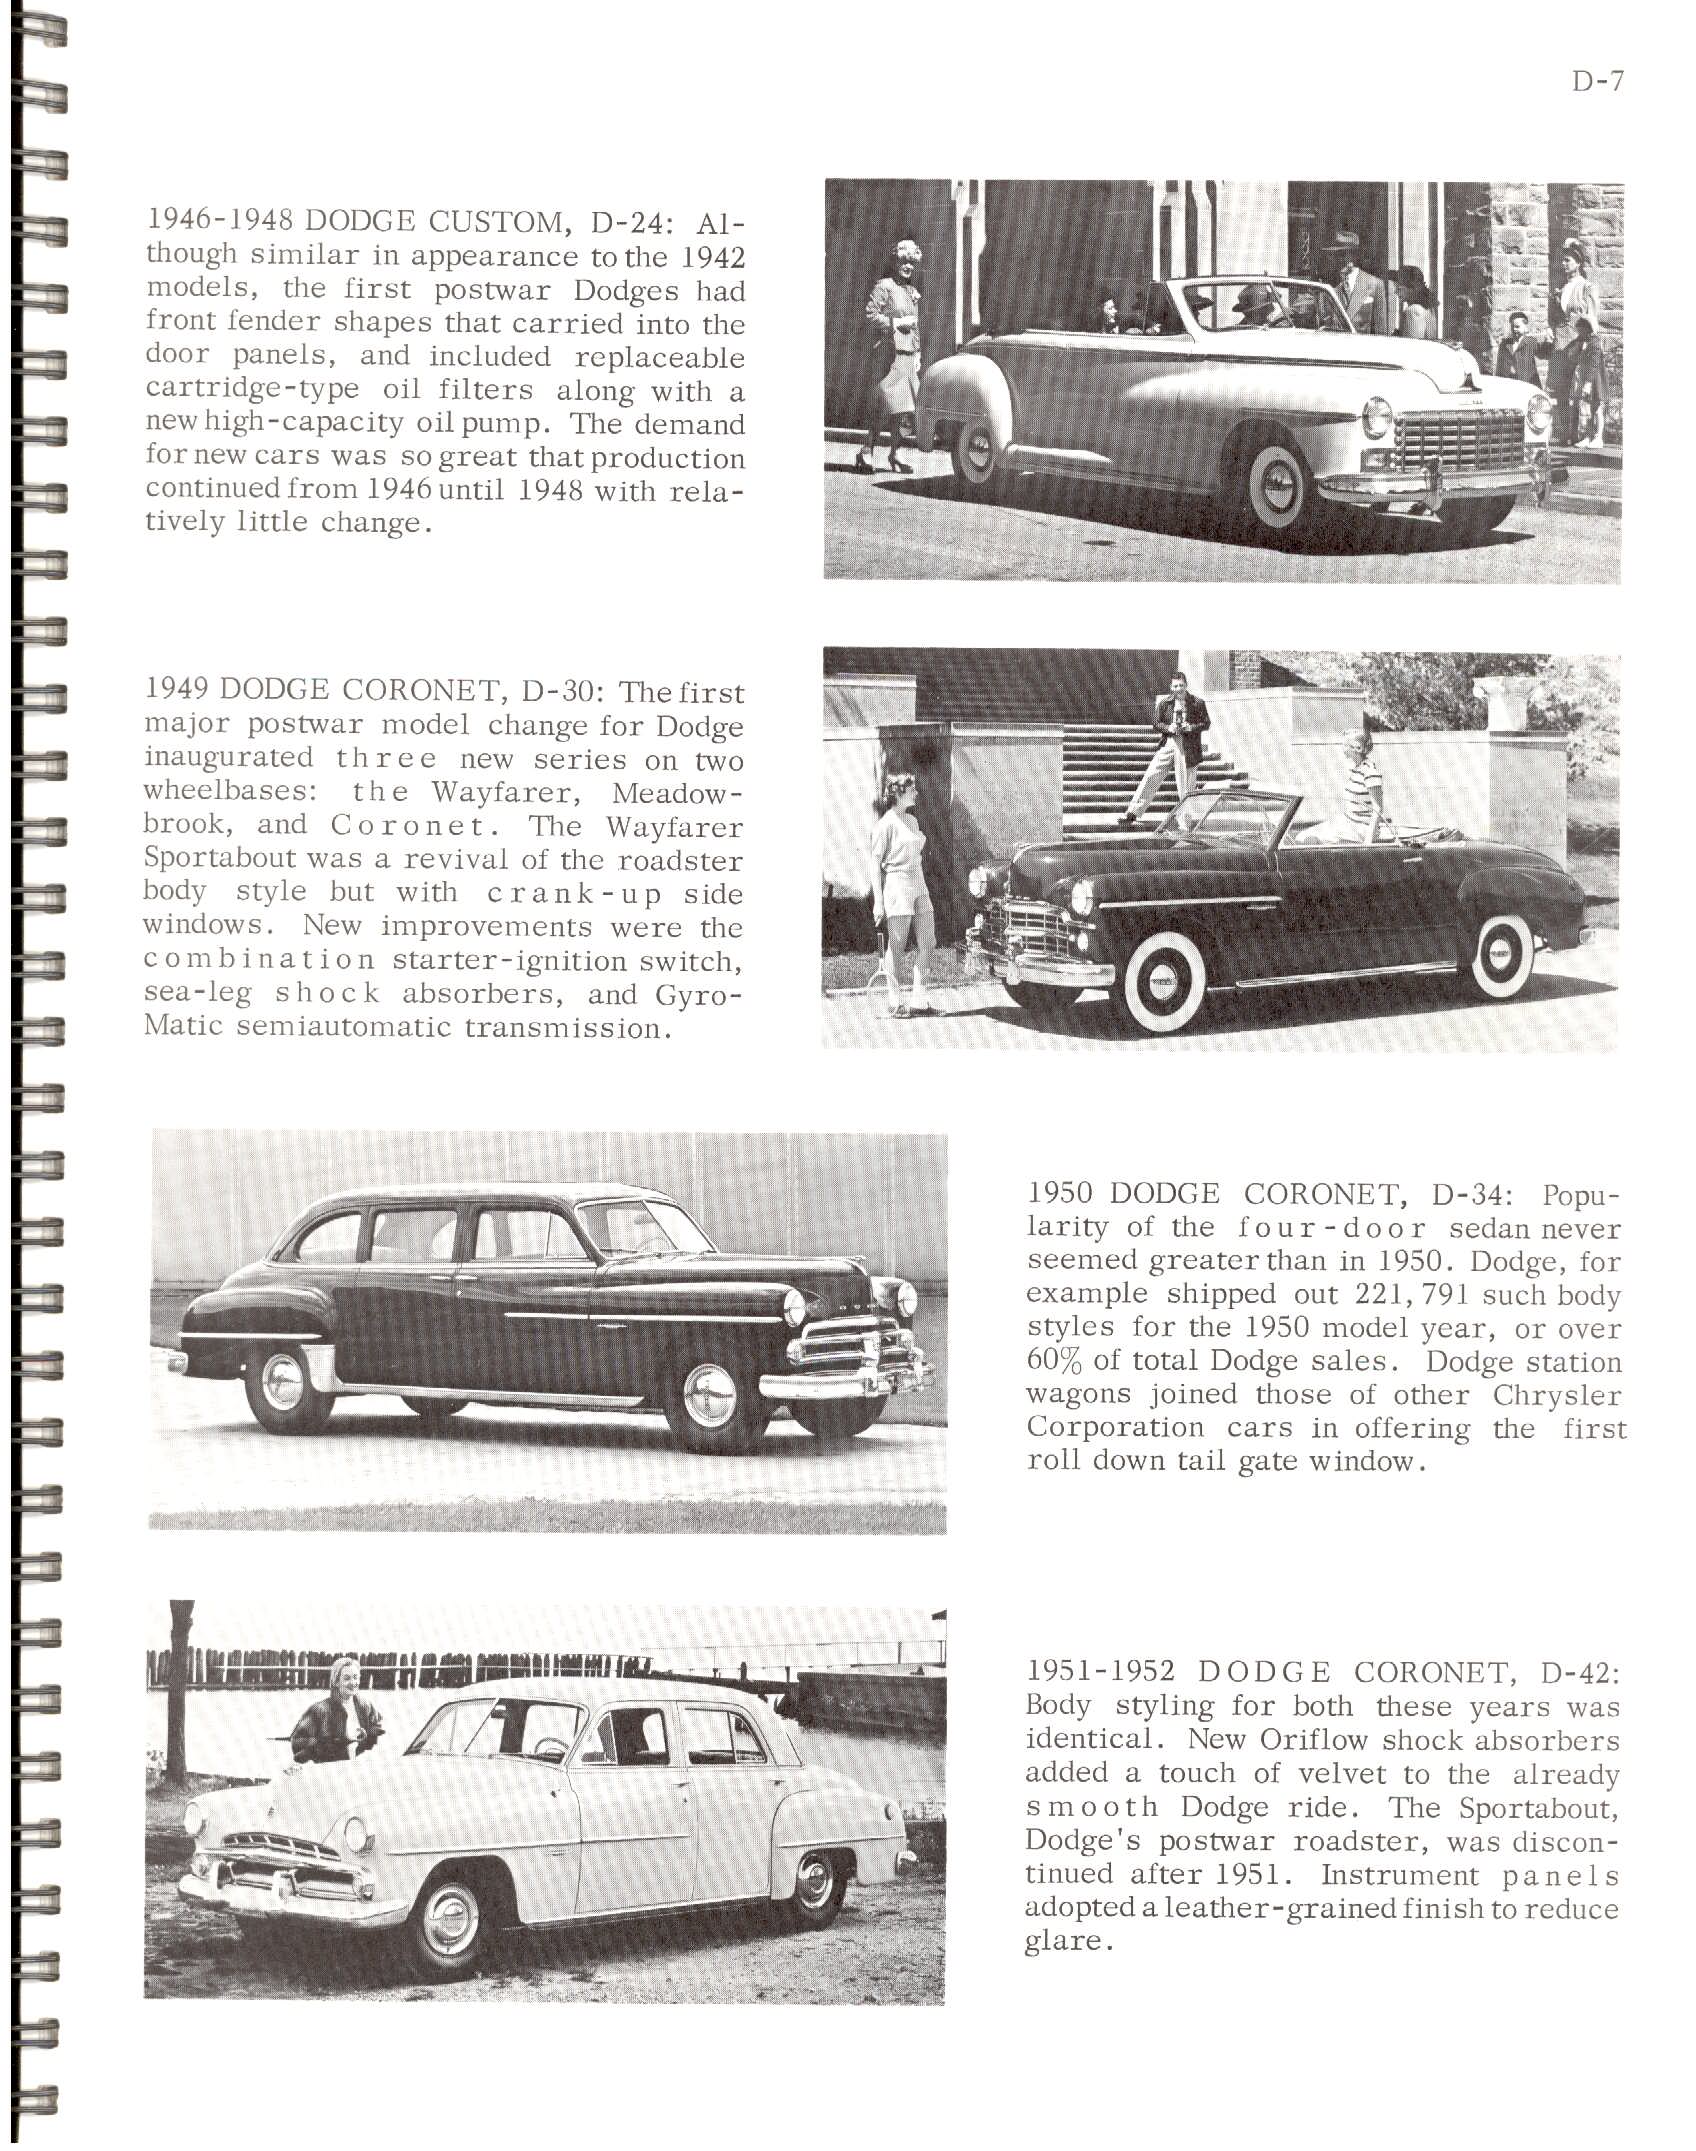 1966-History Of Chrysler Cars-D07